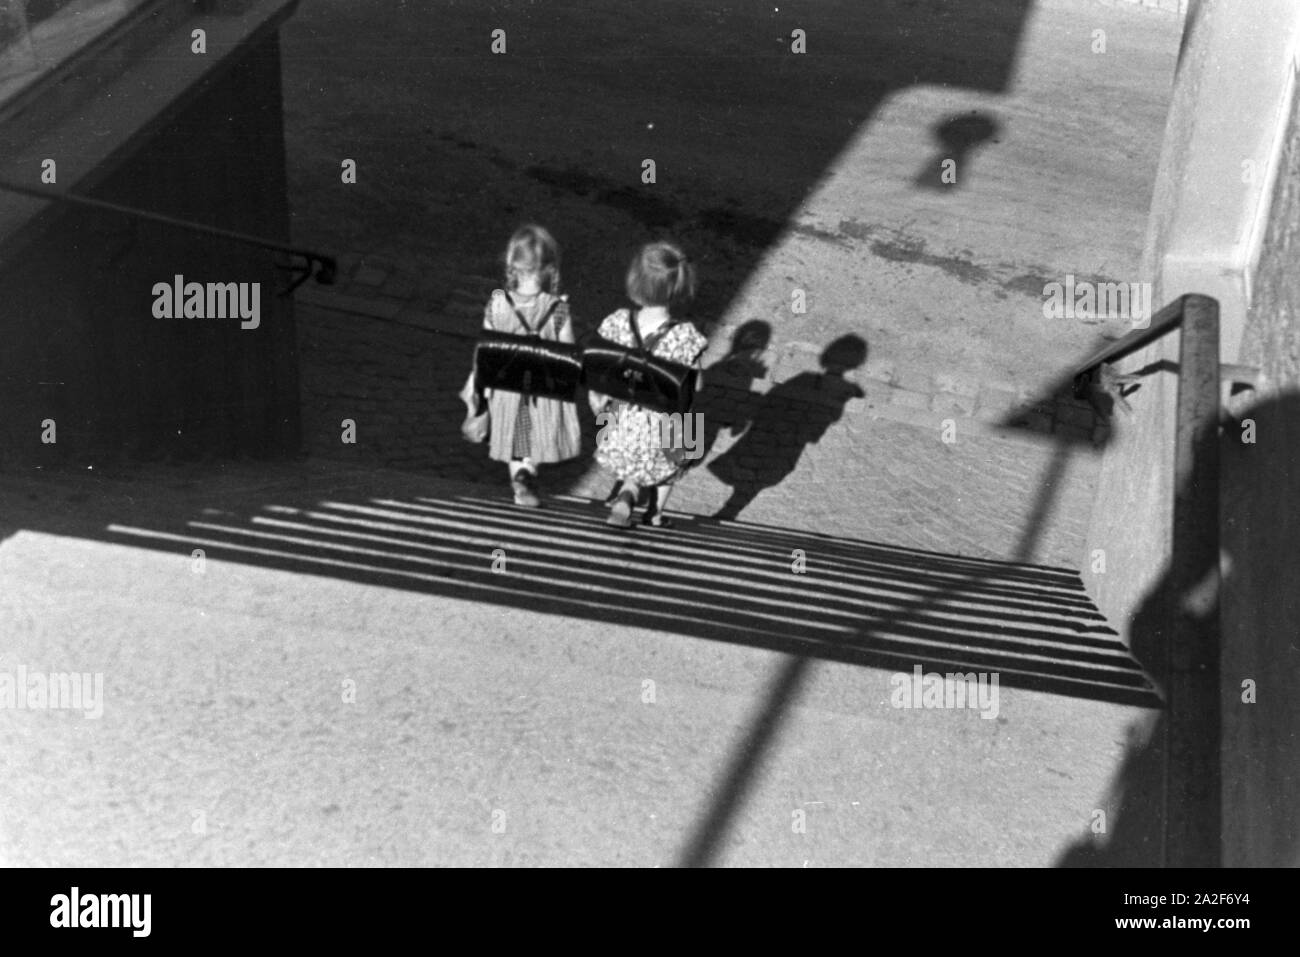 Zwei Kleine Schulmädchen Auf Dem Heimweg, 1930er Jahre Deutsches Reich. Zwei kleine Schulmädchen auf dem Heimweg, Deutschland der 1930er Jahre. Stockfoto